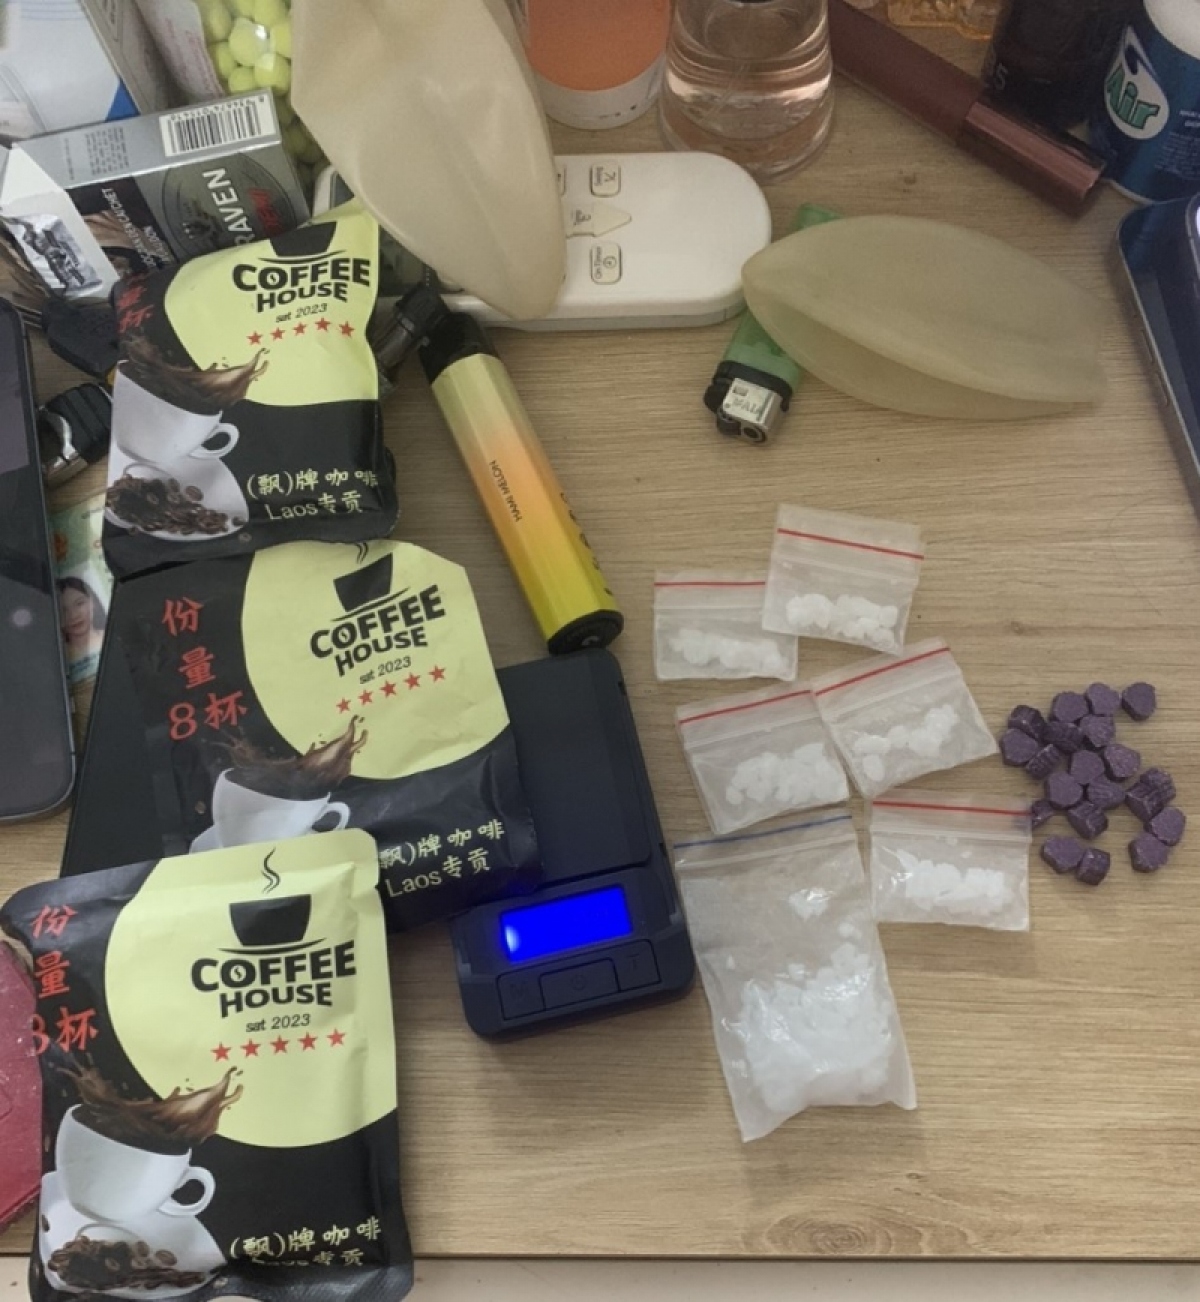 Bắt quả tang nhóm thanh niên dùng ma túy dưới dạng gói cà phê - Ảnh 2.